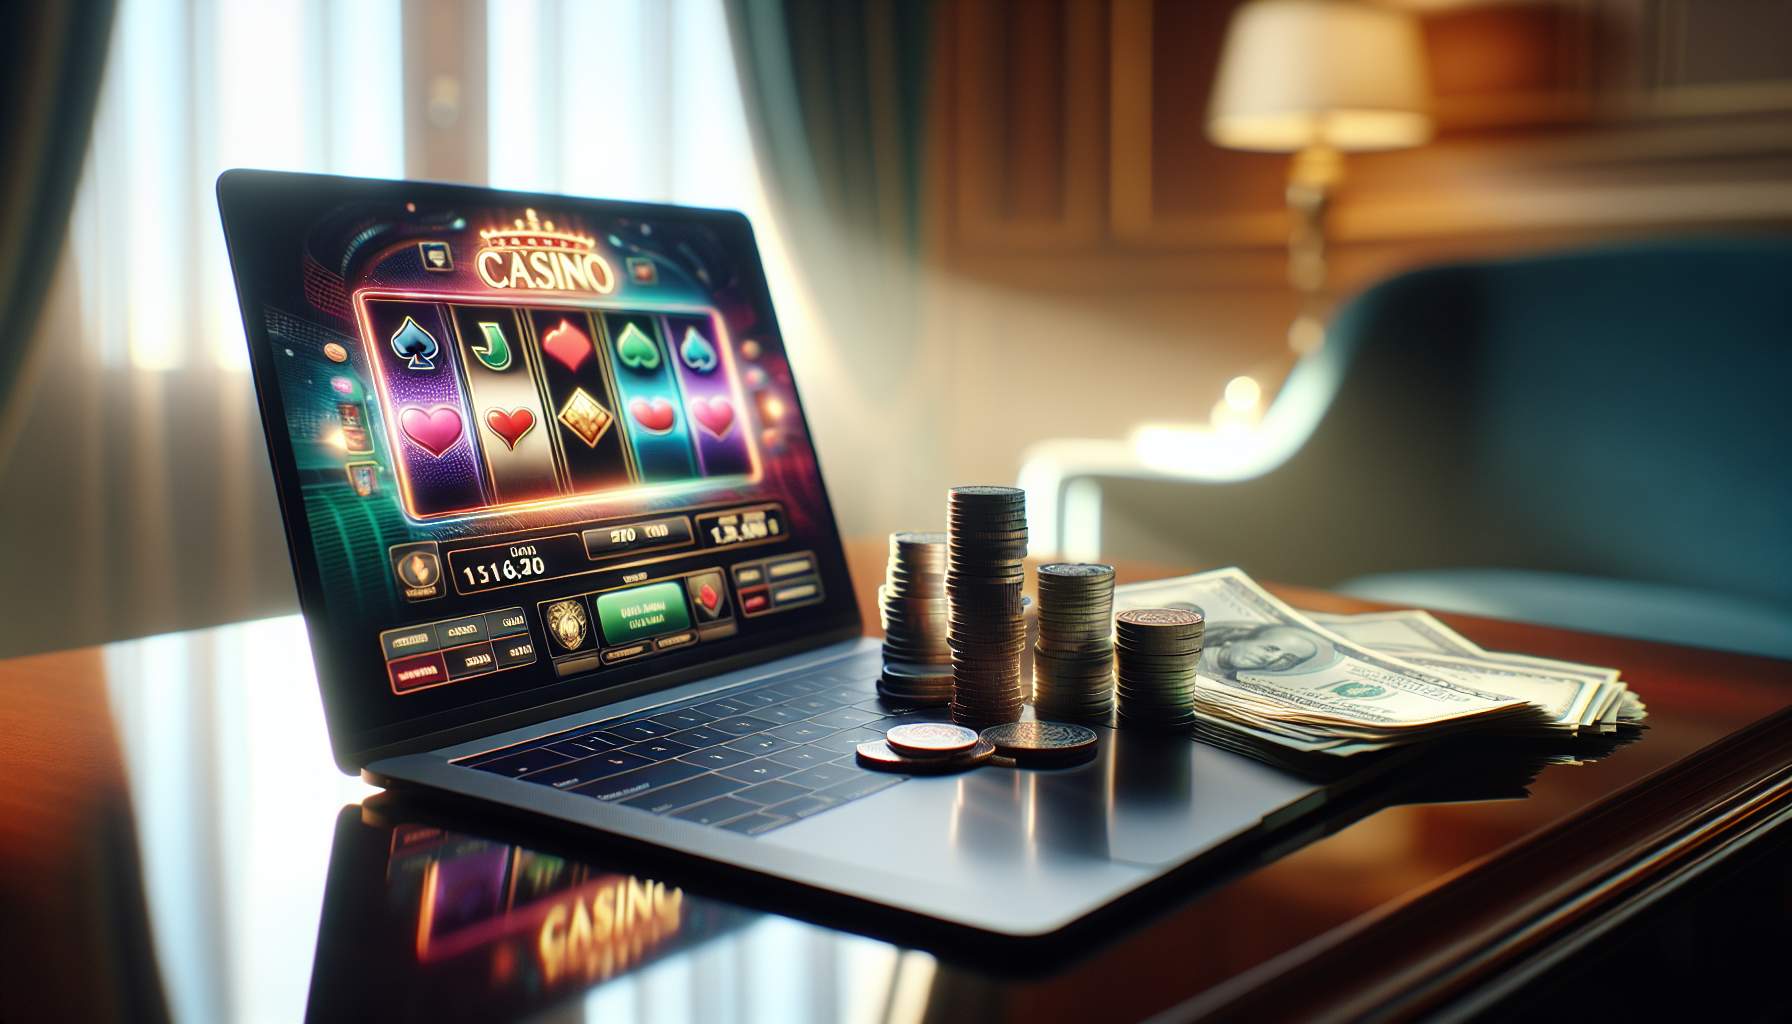 Gagner argent avec l'affiliation casino : Stratégies éprouvées pour maximiser vos revenus en ligne